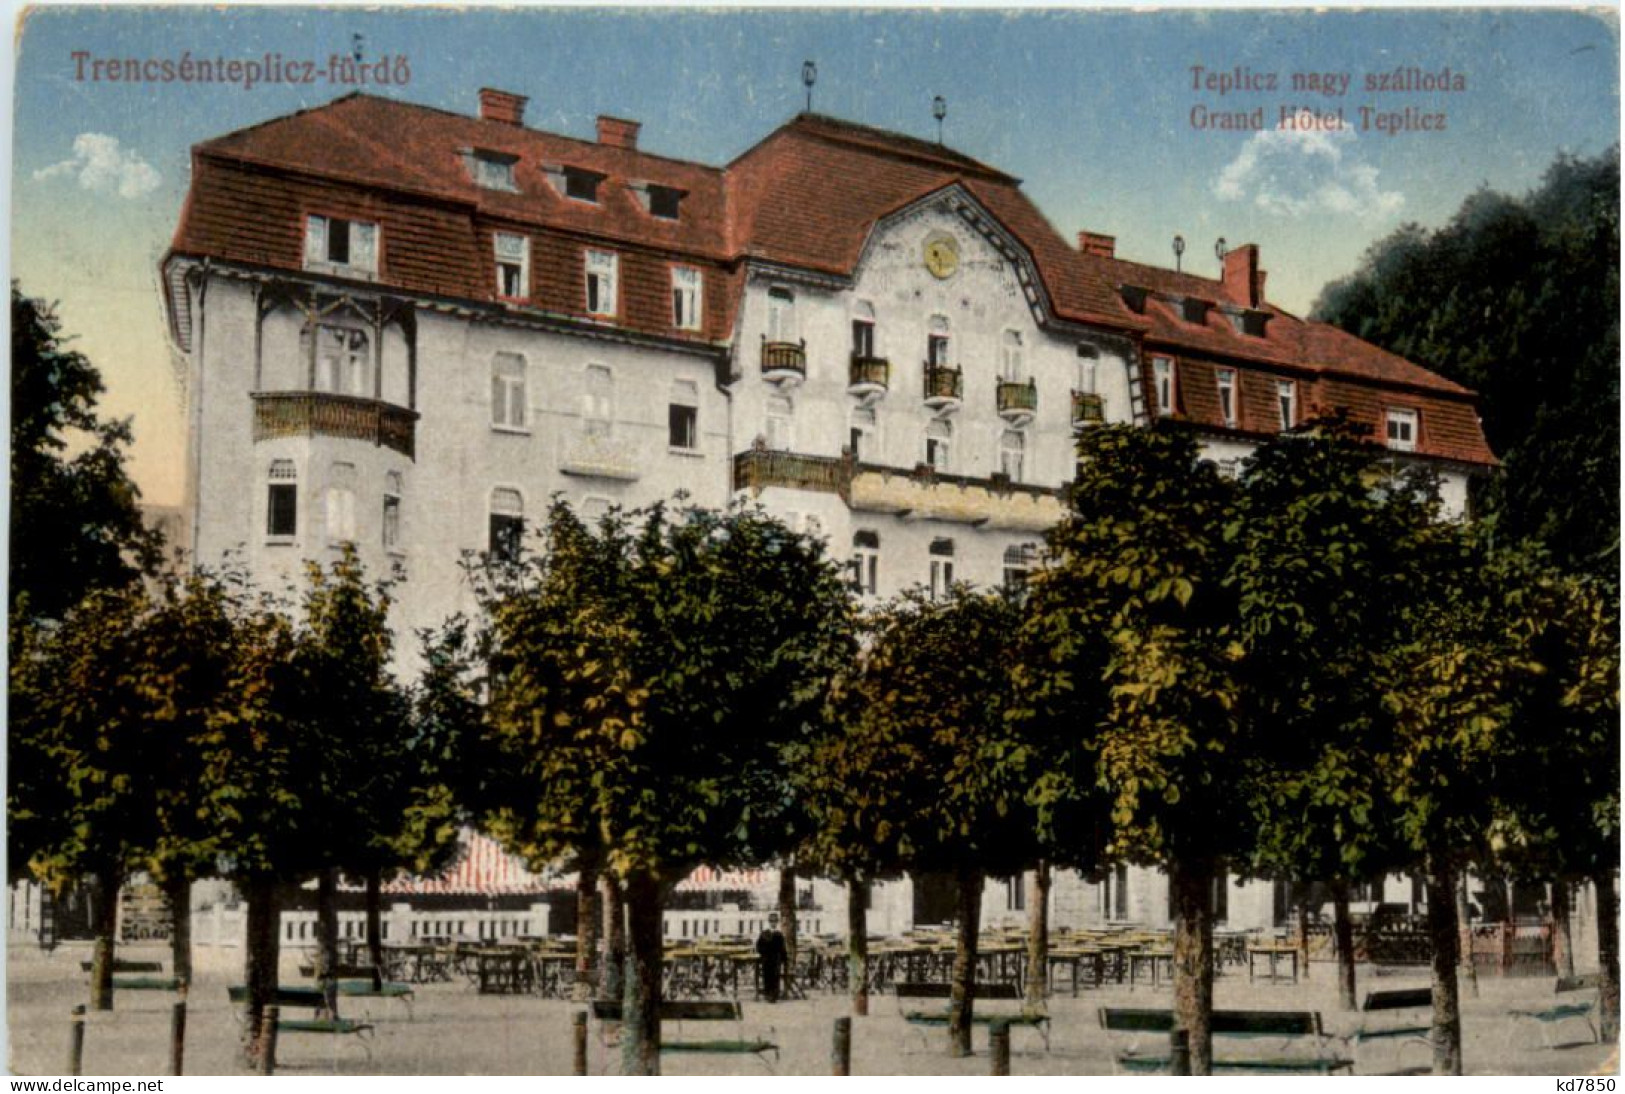 Trencsenteplicz-fürdö - Grand Hotel Teplicz - Slovakia